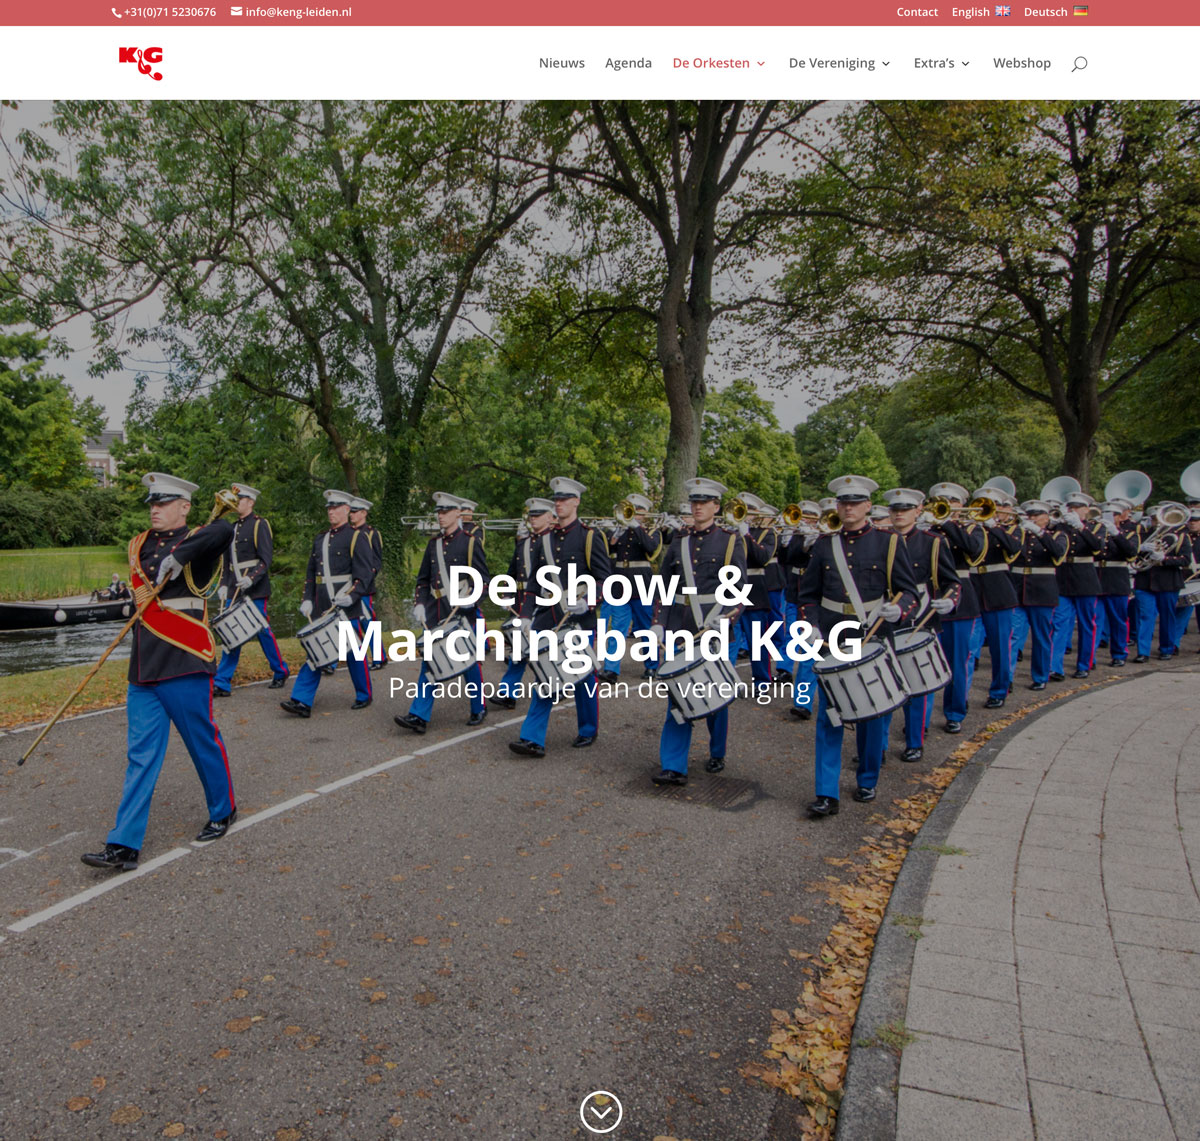 De website heeft een modern ontwerp met grote visuals, zoals hier op de orkest pagina's.